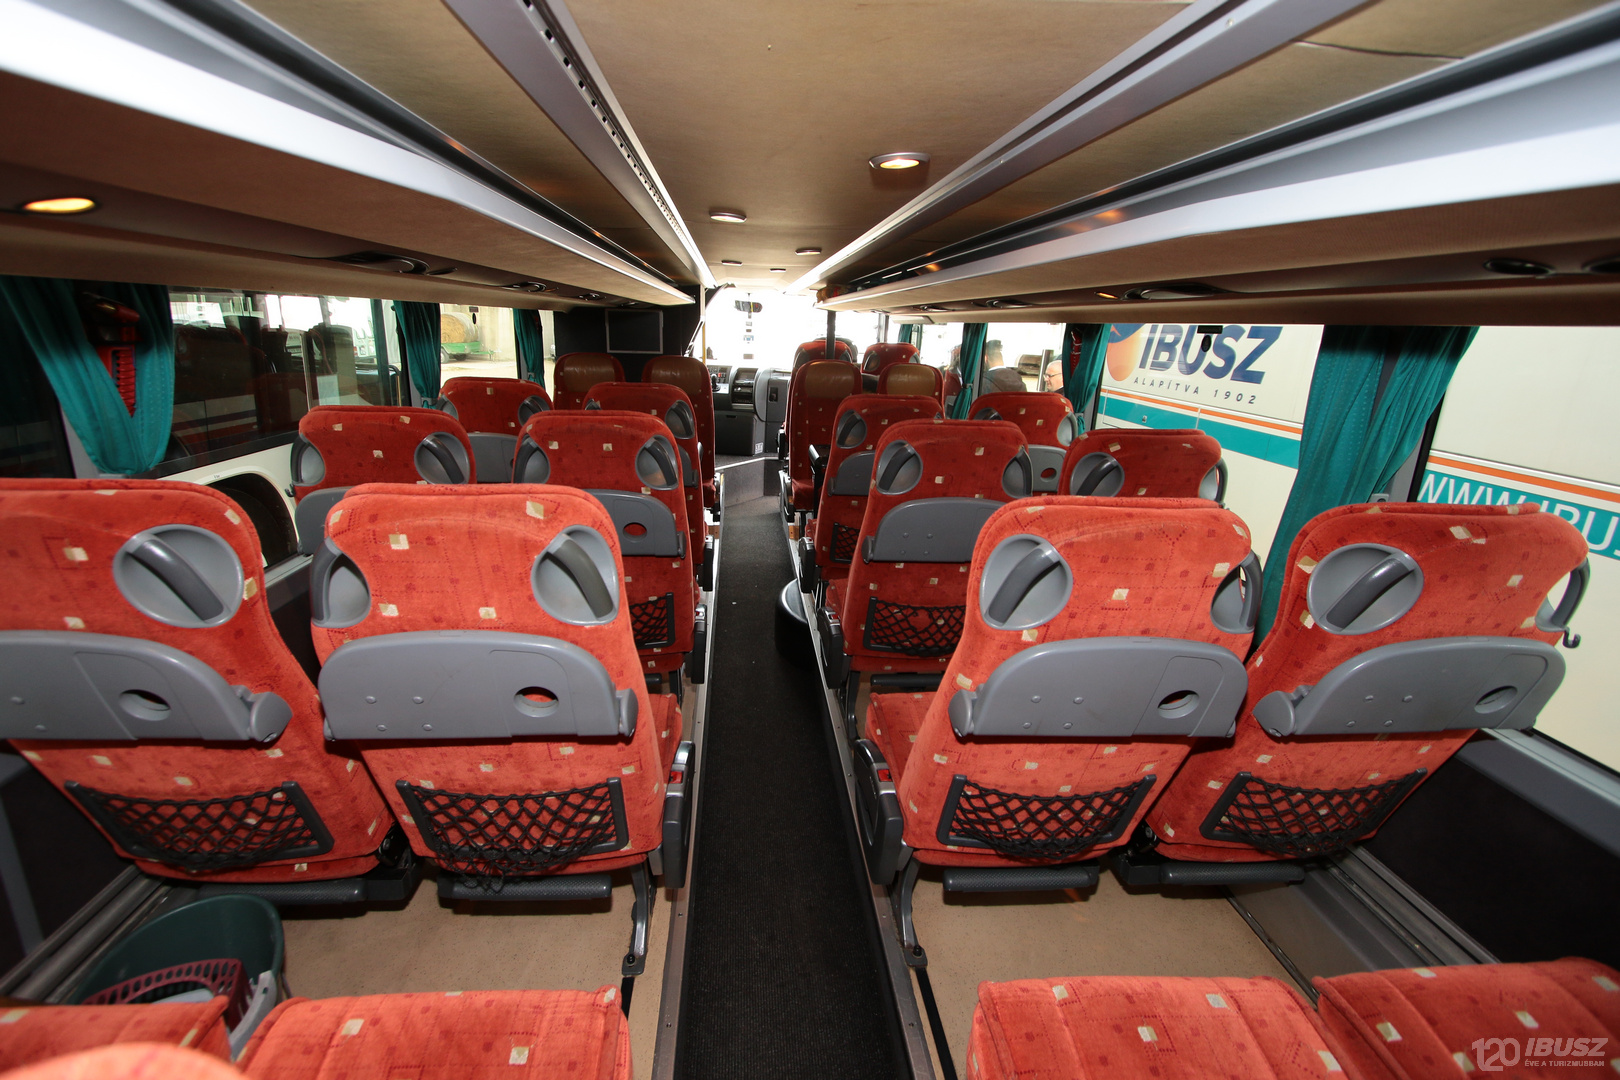 Az IBUSZ által szervezett Halkidiki expressz 2023-as buszjárat asztallal ellátott üléseinél az utazás közben kényelmesen és biztonságosan étkezhetünk.